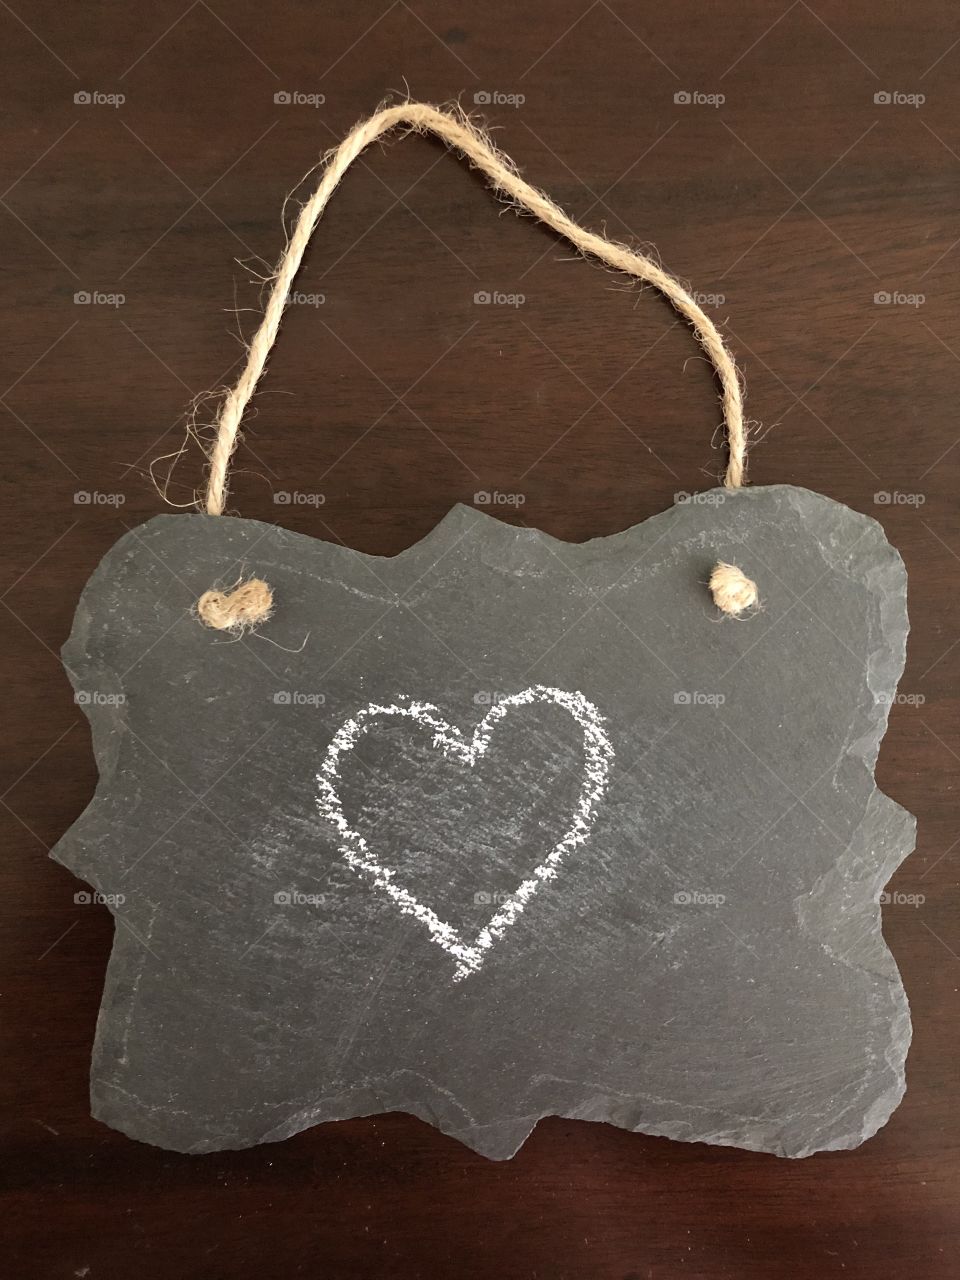 Heart drawn on chalkboard